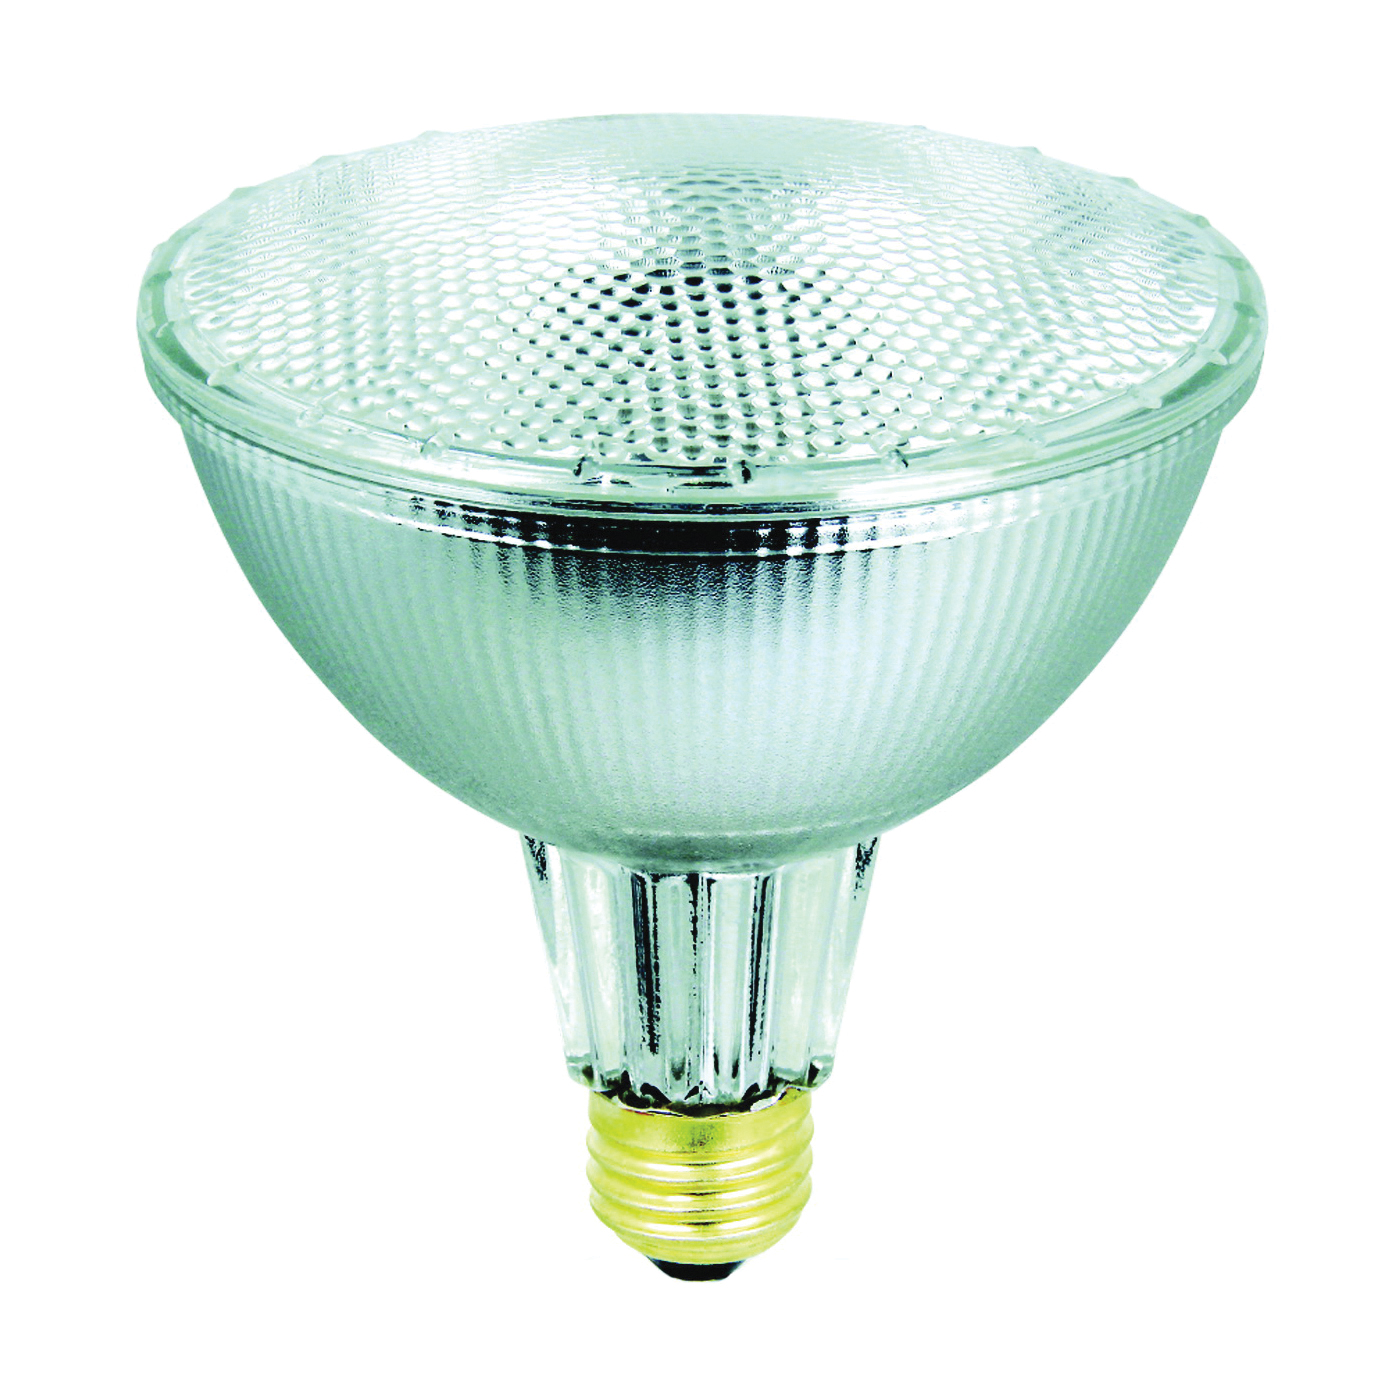 35PAR38/QFL/ES/2 Halogen Bulb, 35 W, Medium E26 Lamp Base, PAR38 Lamp, Soft White Light, 580 Lumens